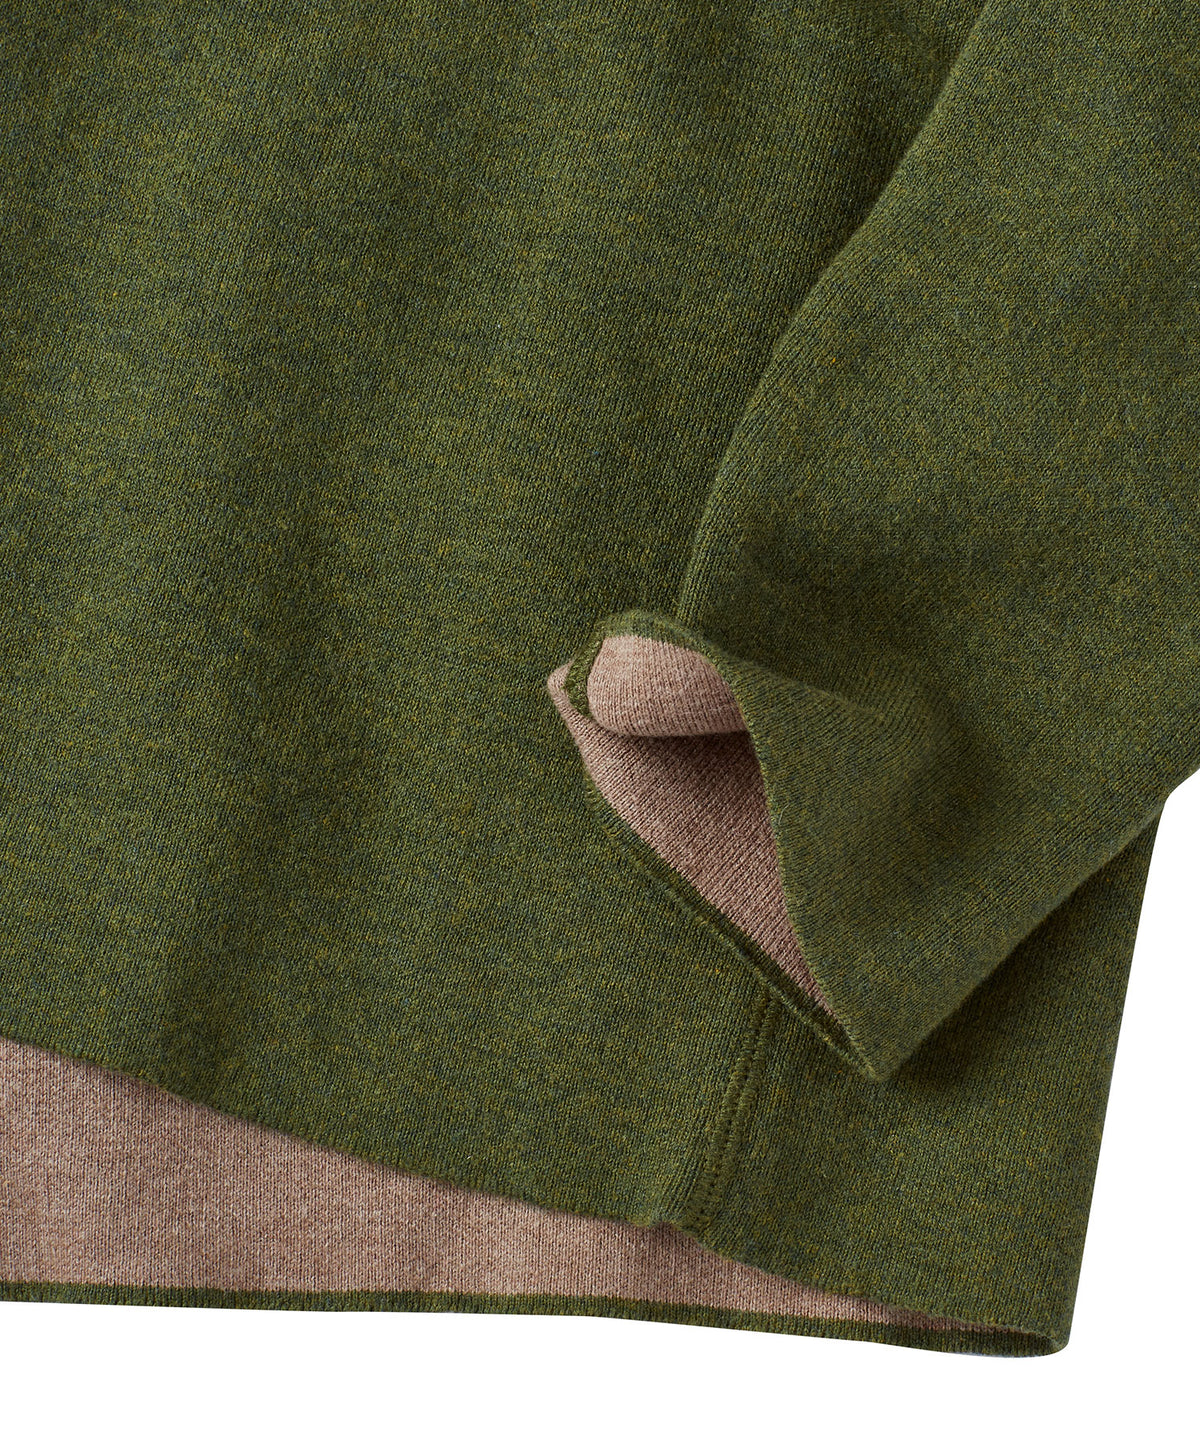 Reversible Quarter-Zip Mock Neck Sweater